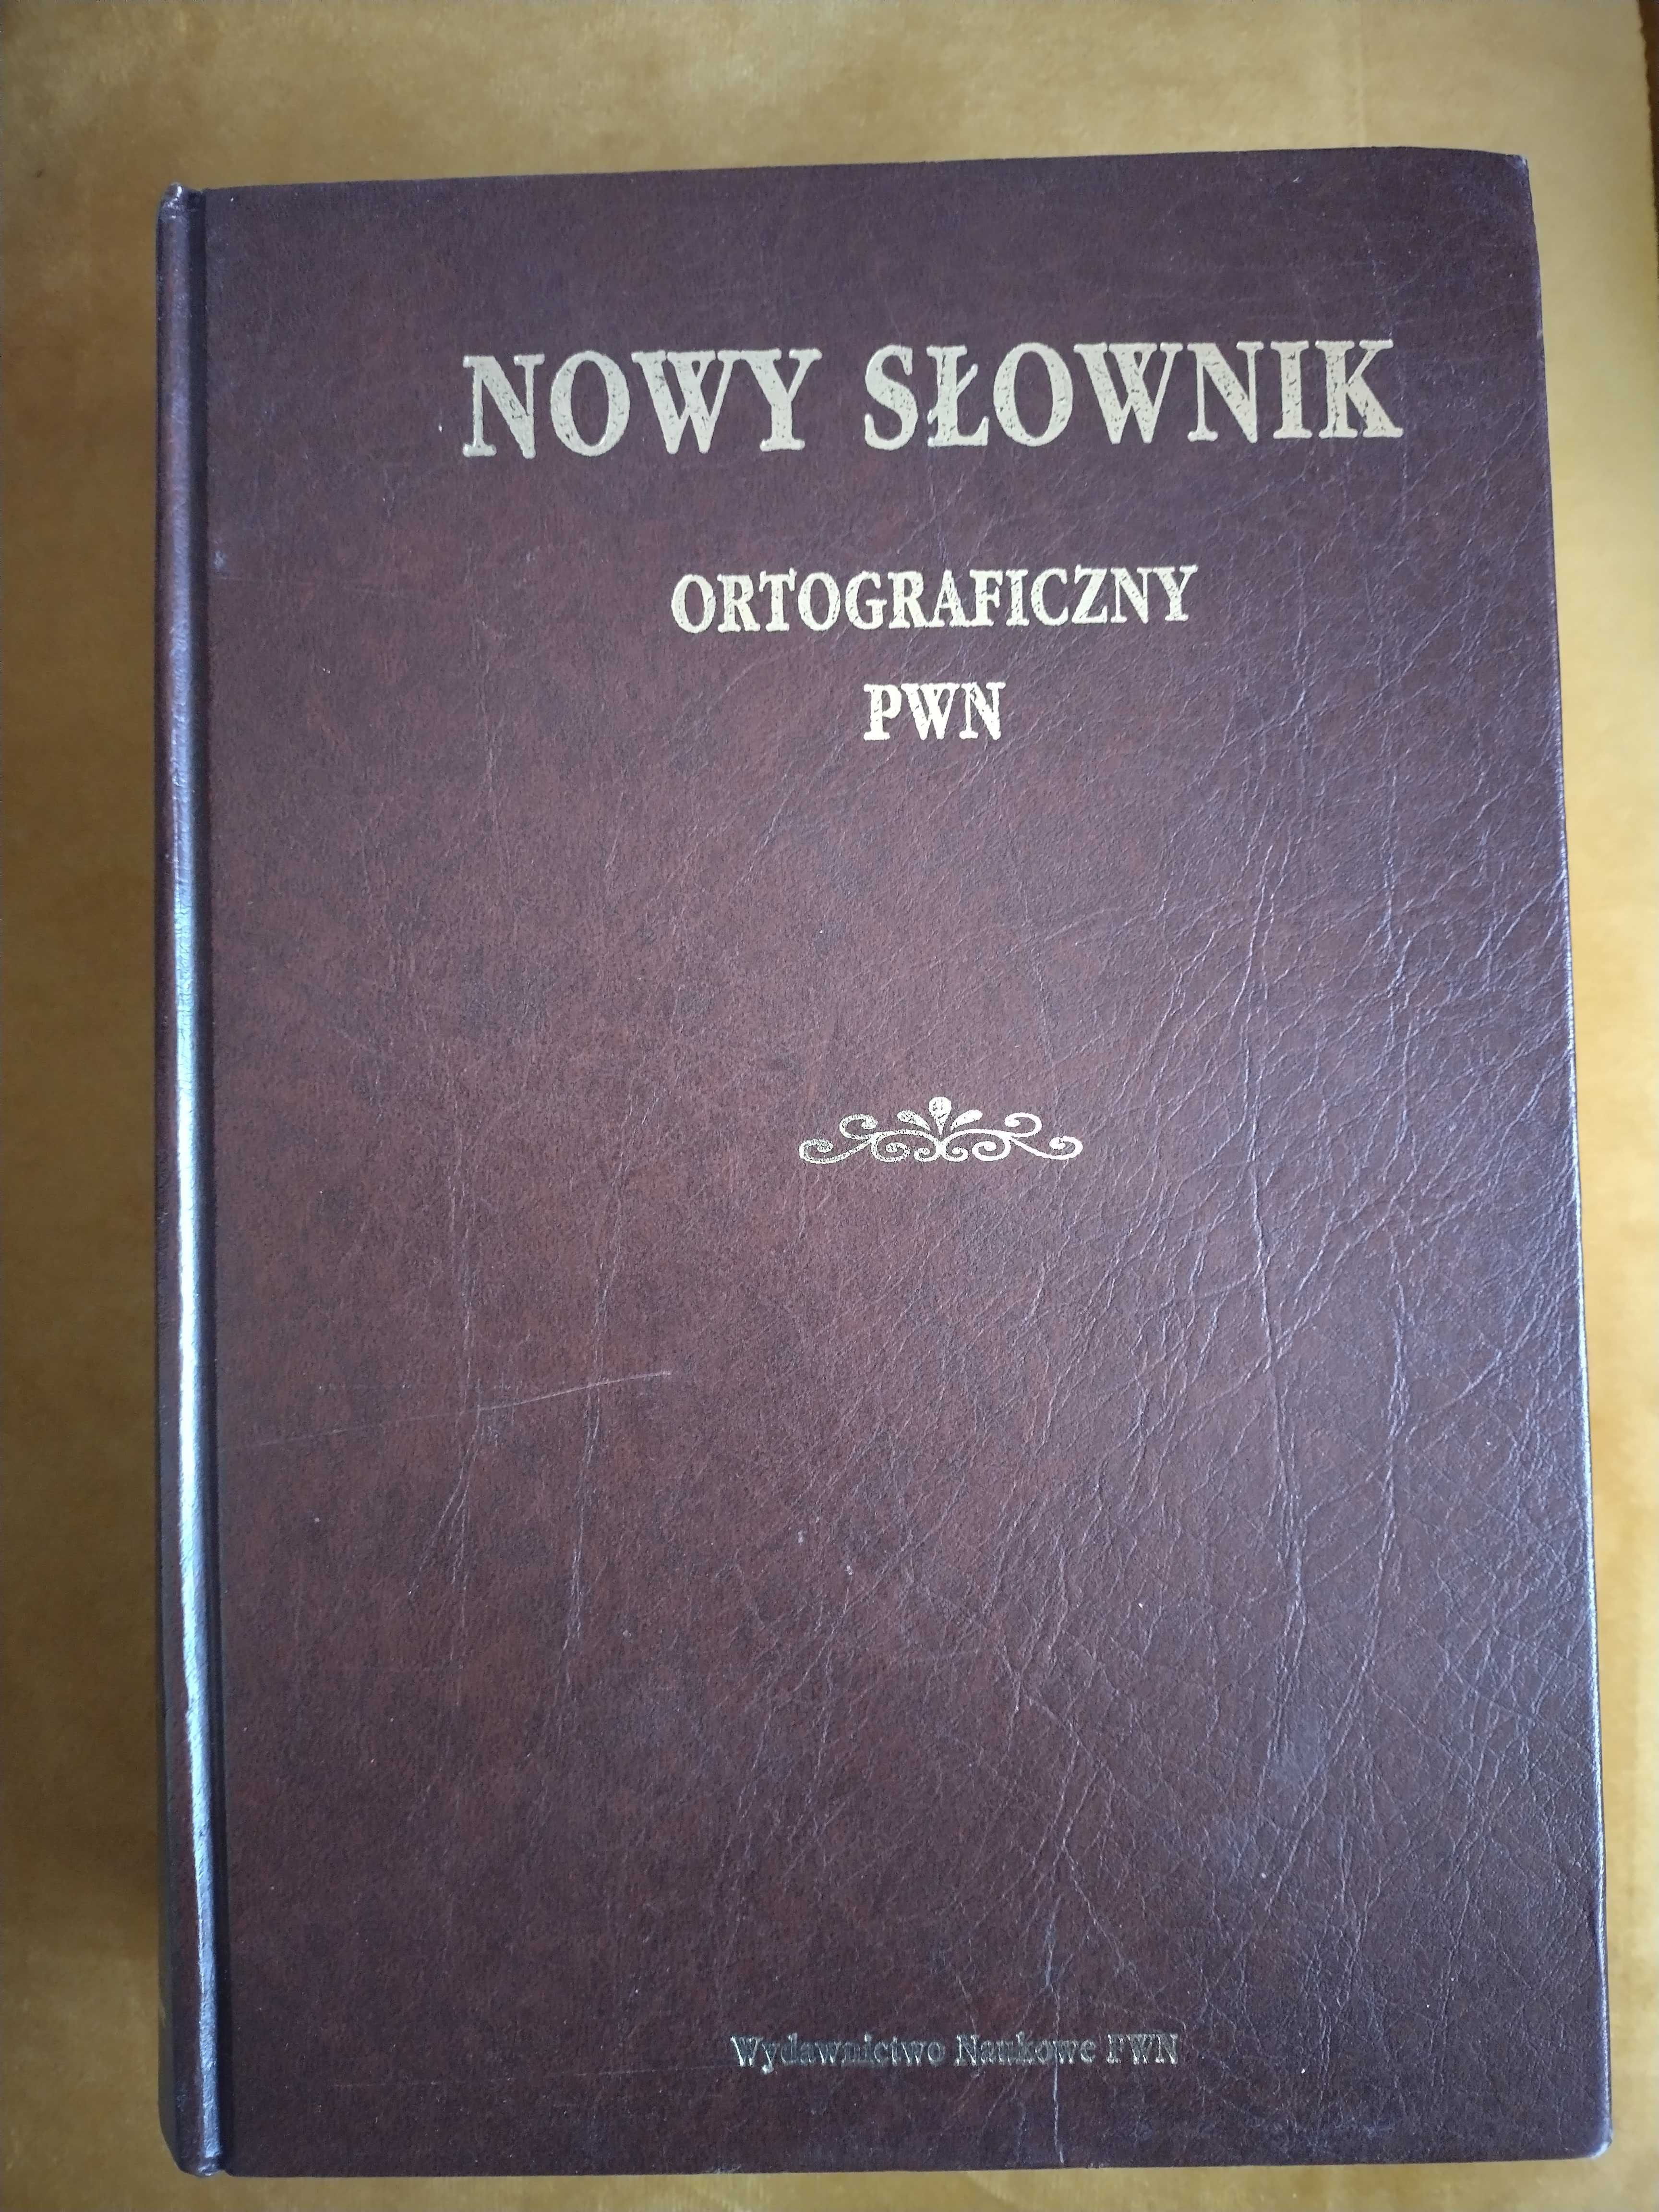 Nowy Słownik Ortograficzny PWN prof. Edward Polański 1996